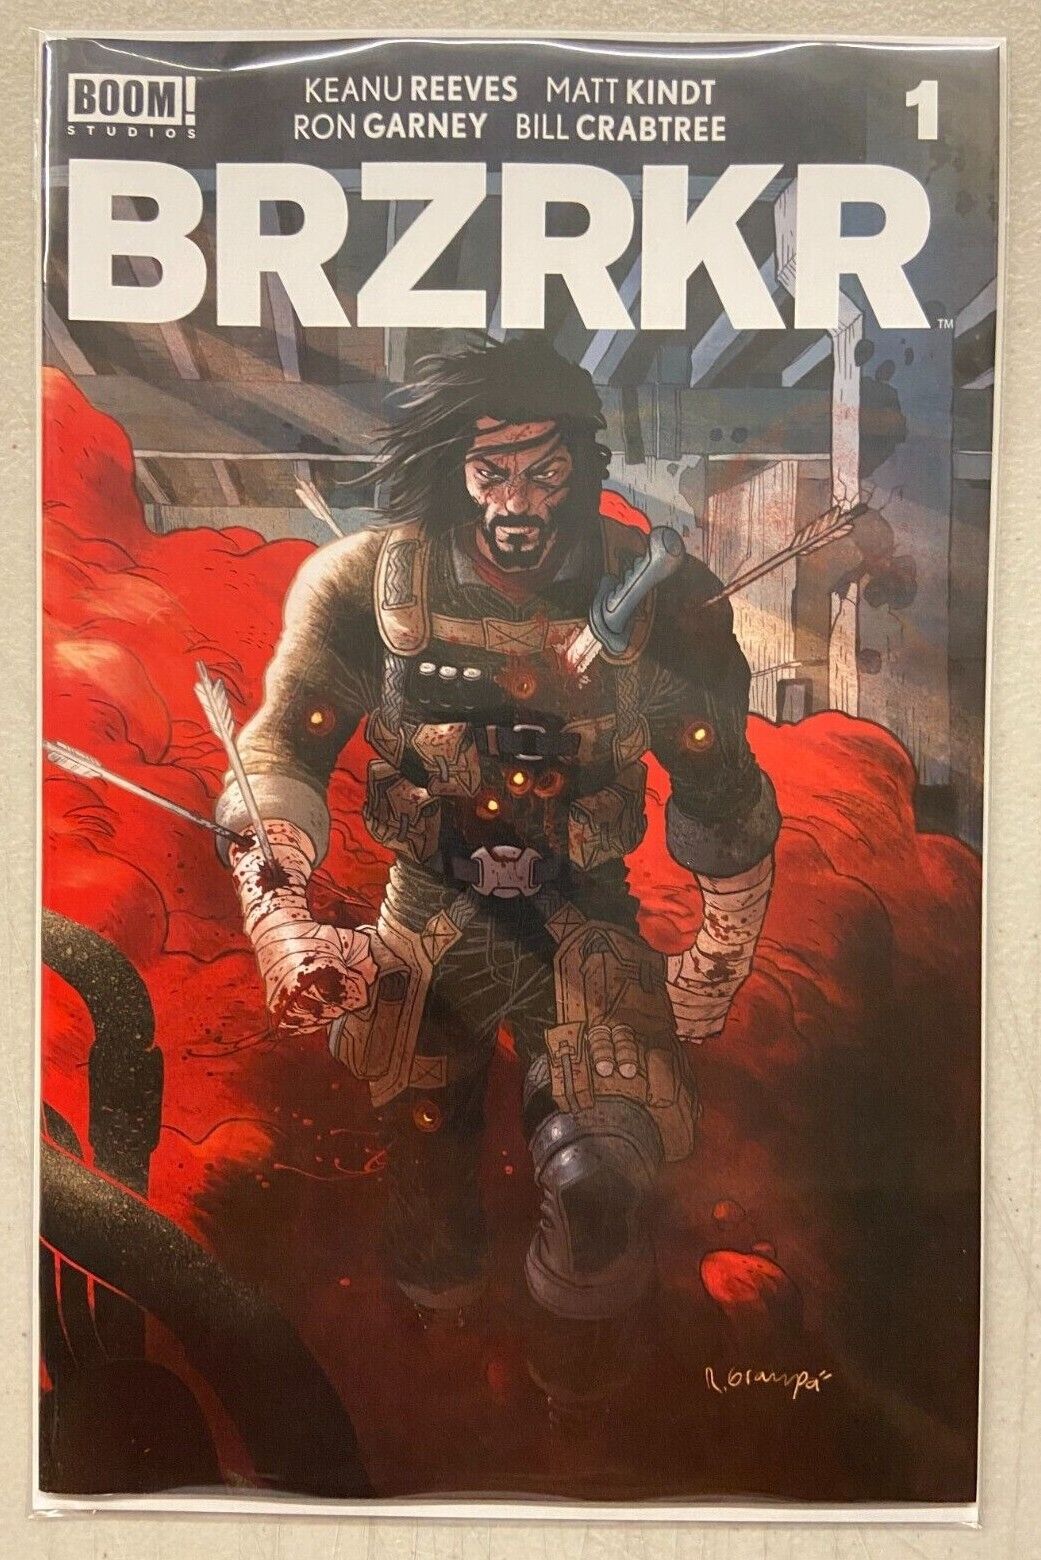 BRZRKR Volume 1 Boom Studios Keanu Reeves